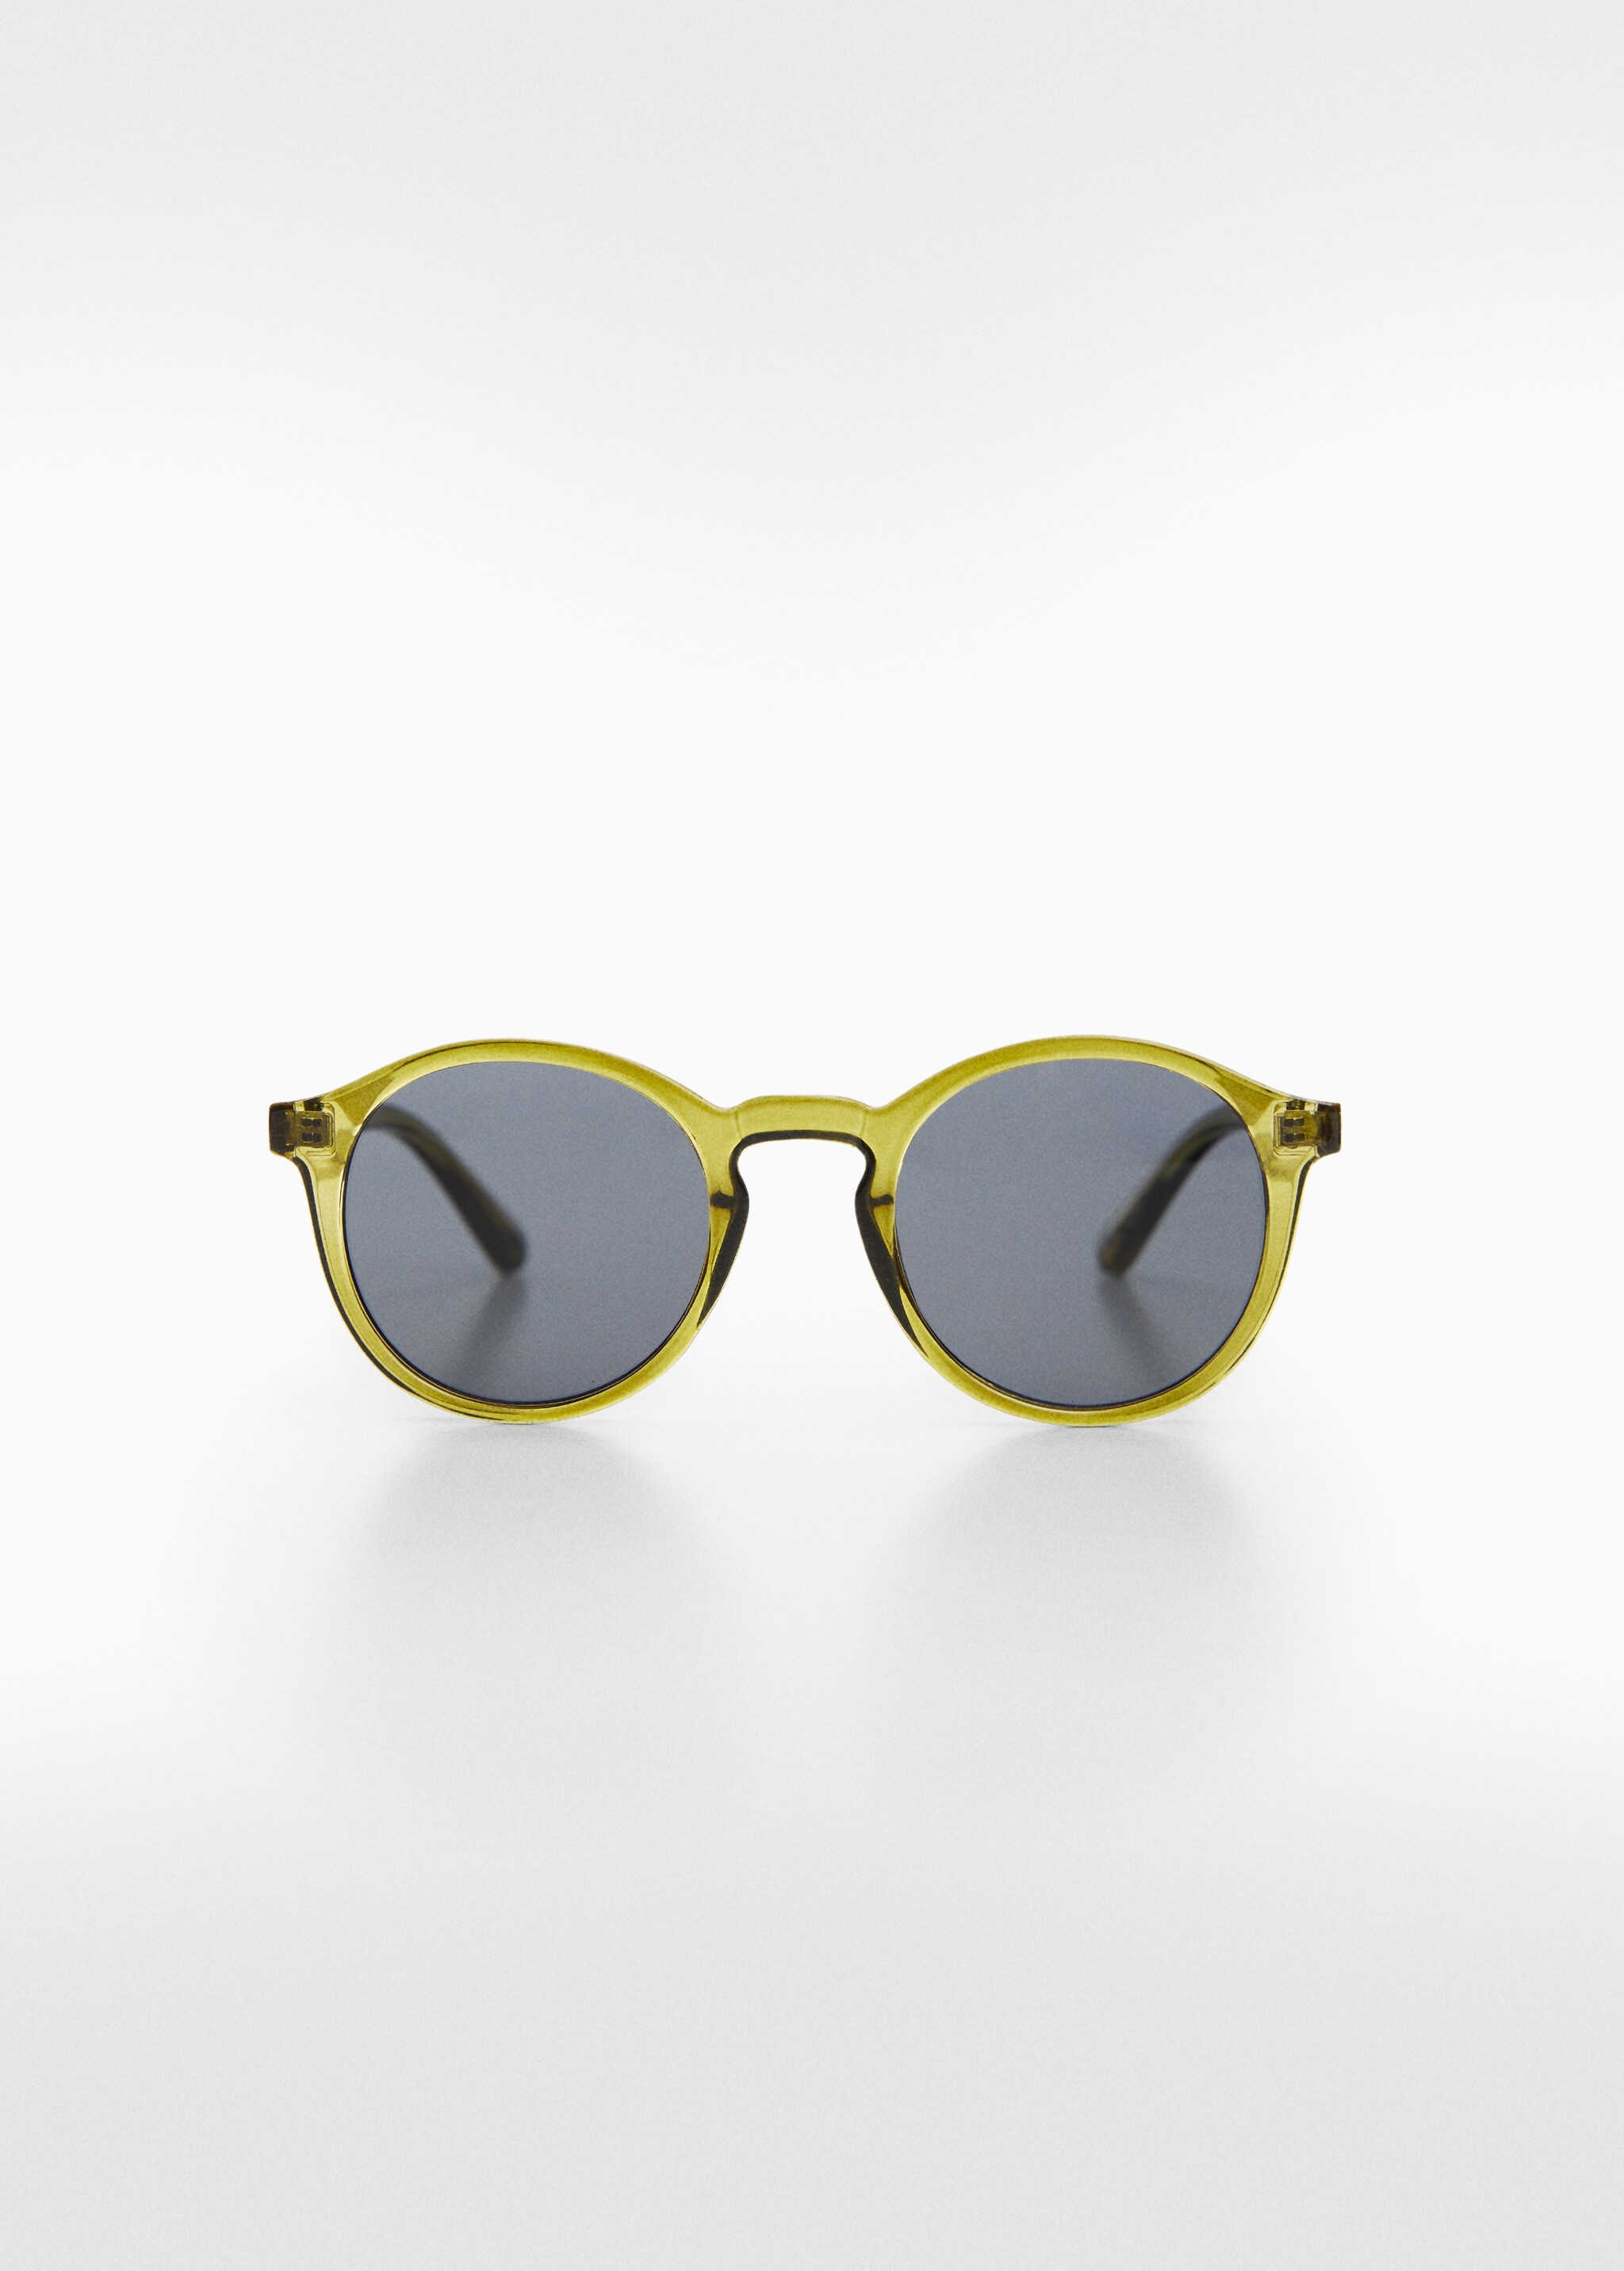 Солнцезащитные очки круглой формы  - Изделие без модели